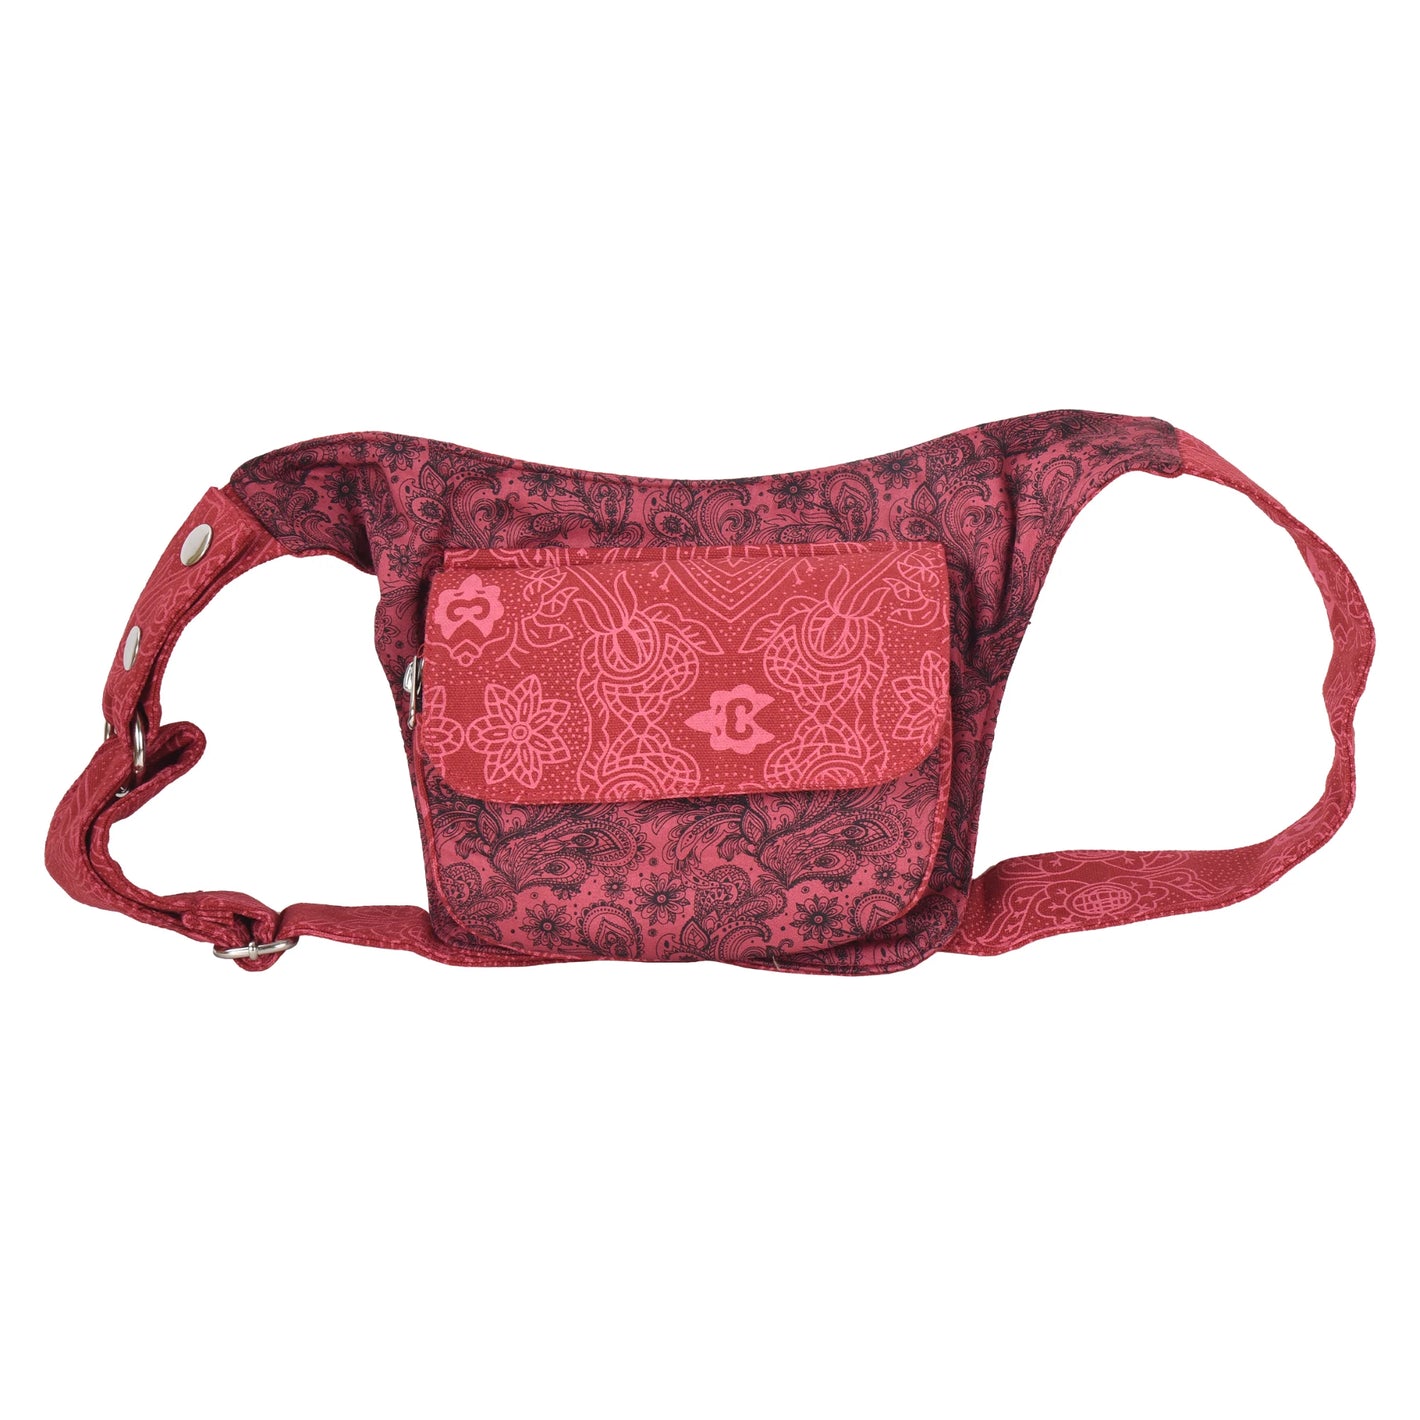 Bauchtasche Nijens Hüfttasche Stoff Tasche mit Paisley Motive in Rot